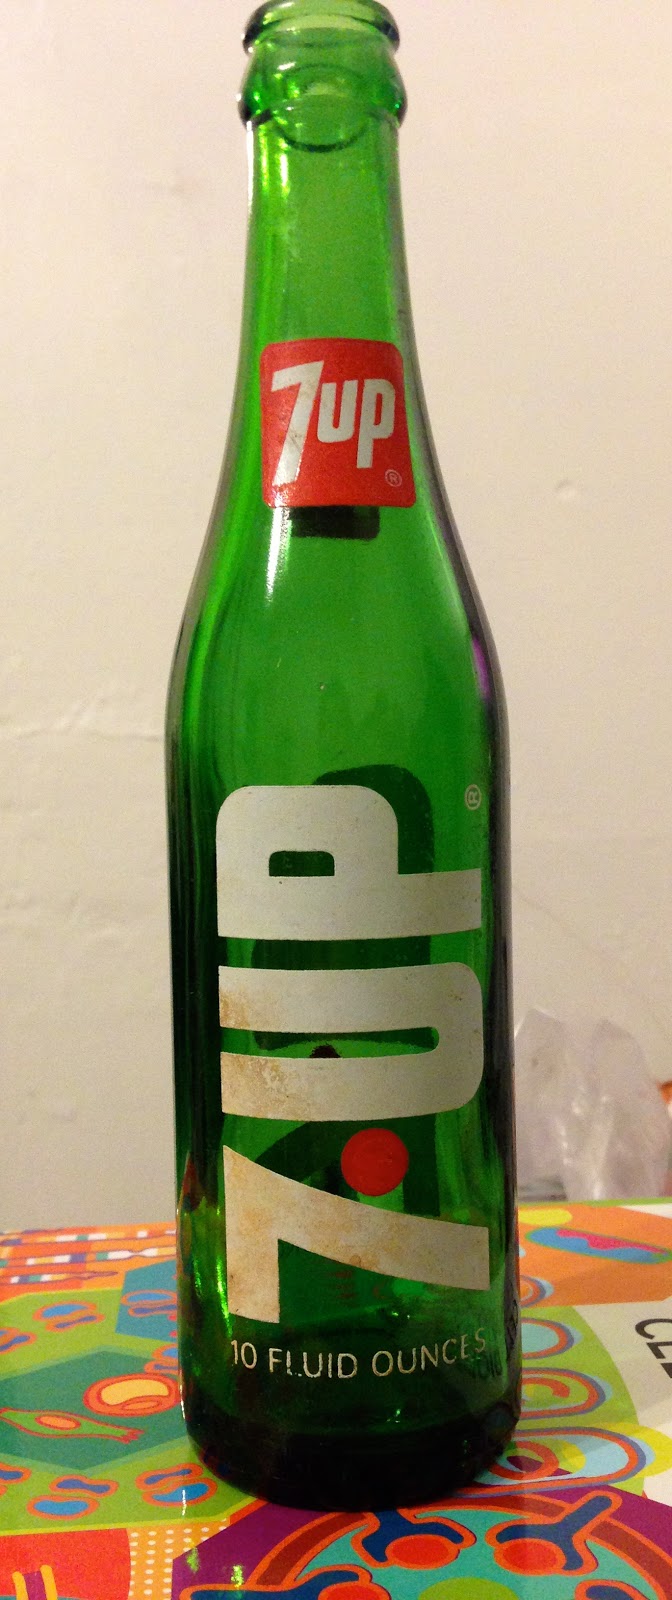 Old 7 up bottle